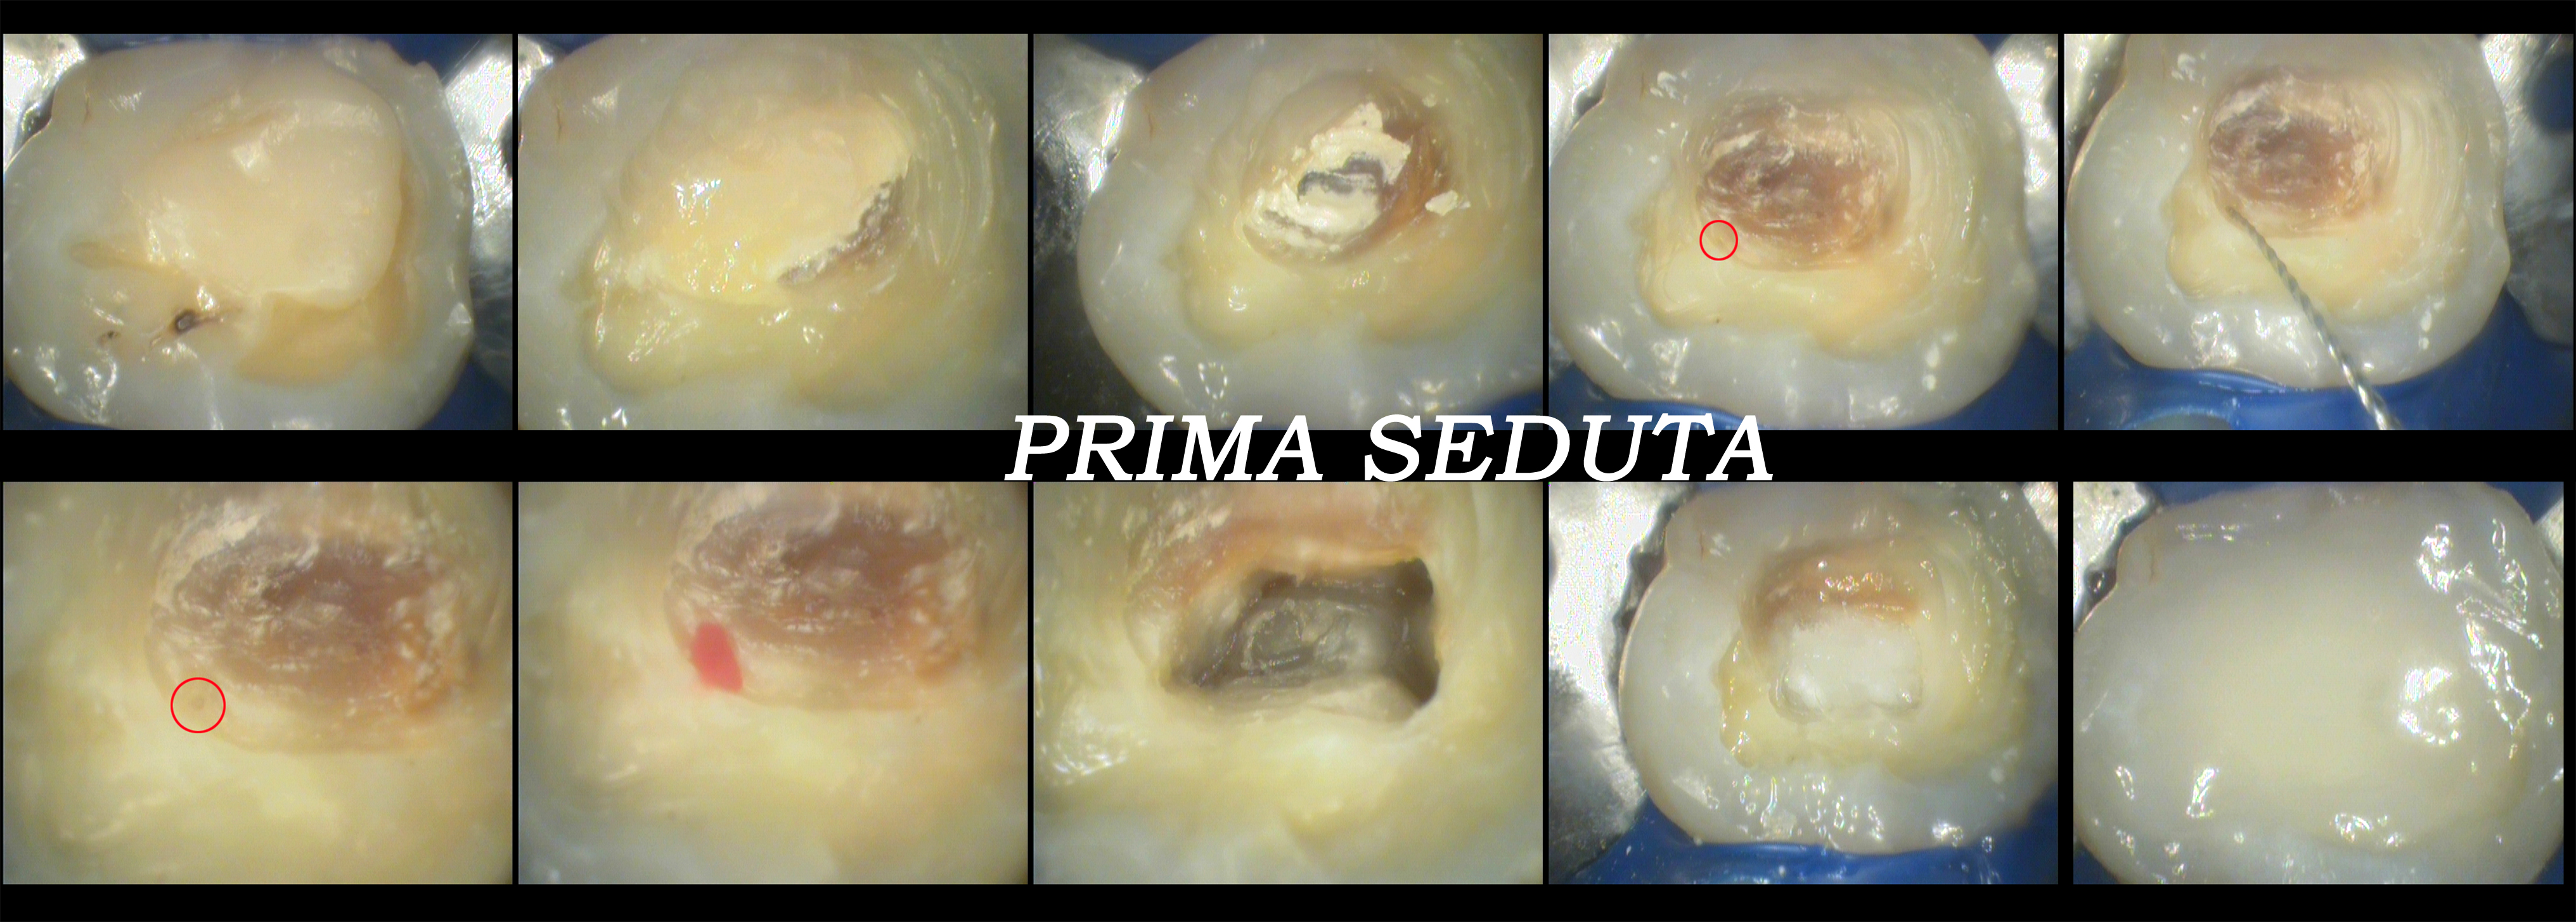 Trattamento endodontico di un ottavo superiore con quattro radici e quattro canali Dr. Natalini - fig. 3